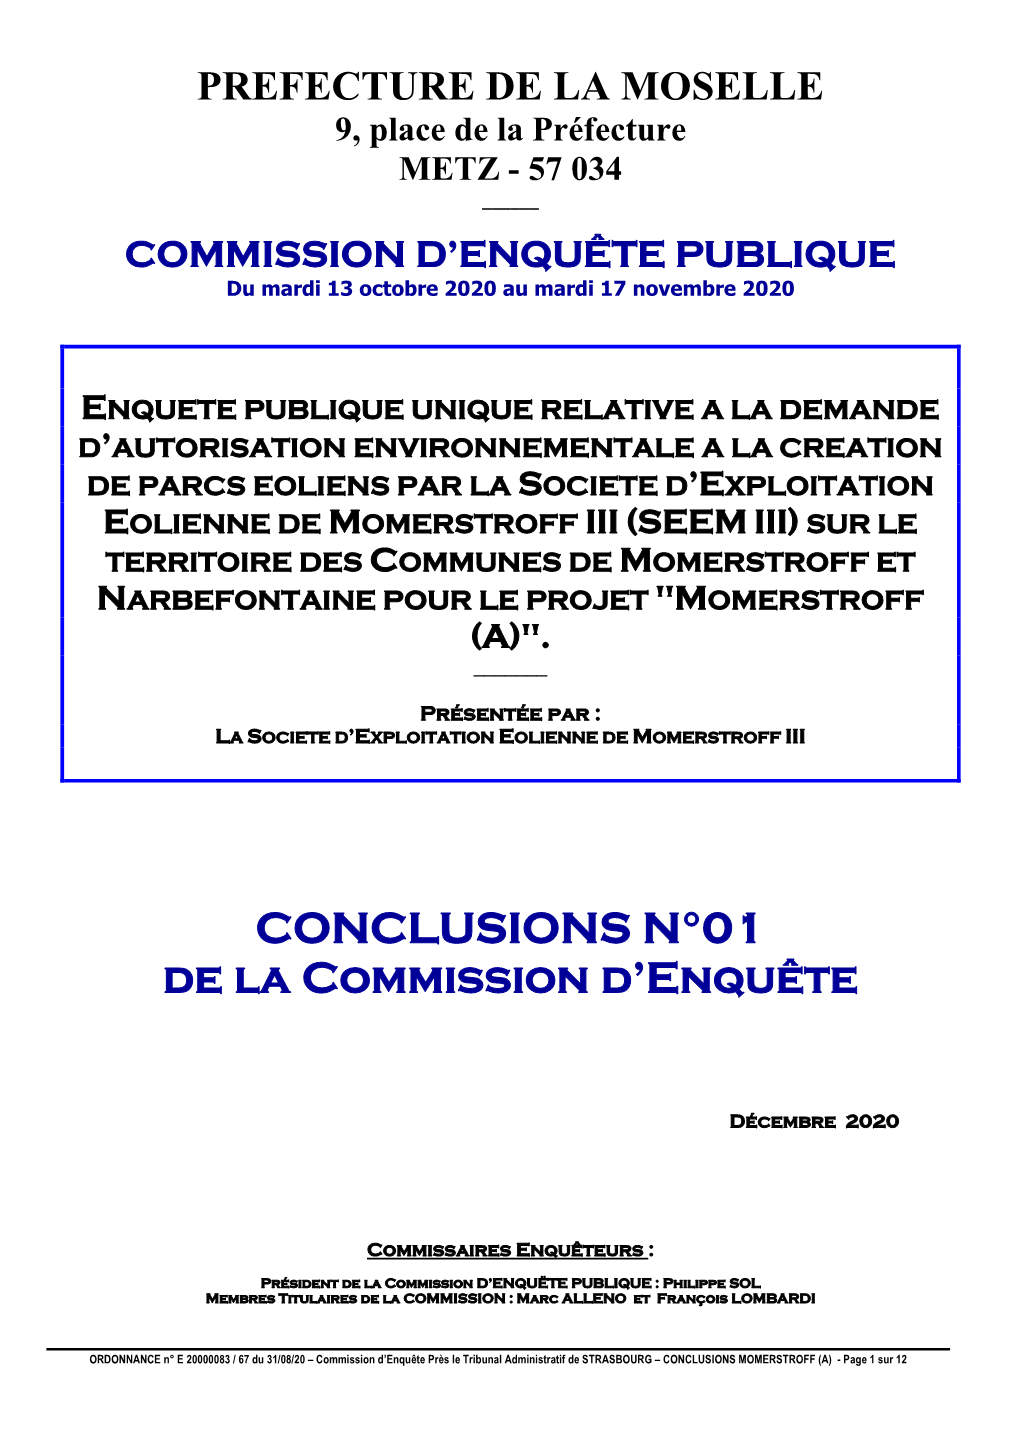 CONCLUSIONS N°01 De La Commission D'enquête